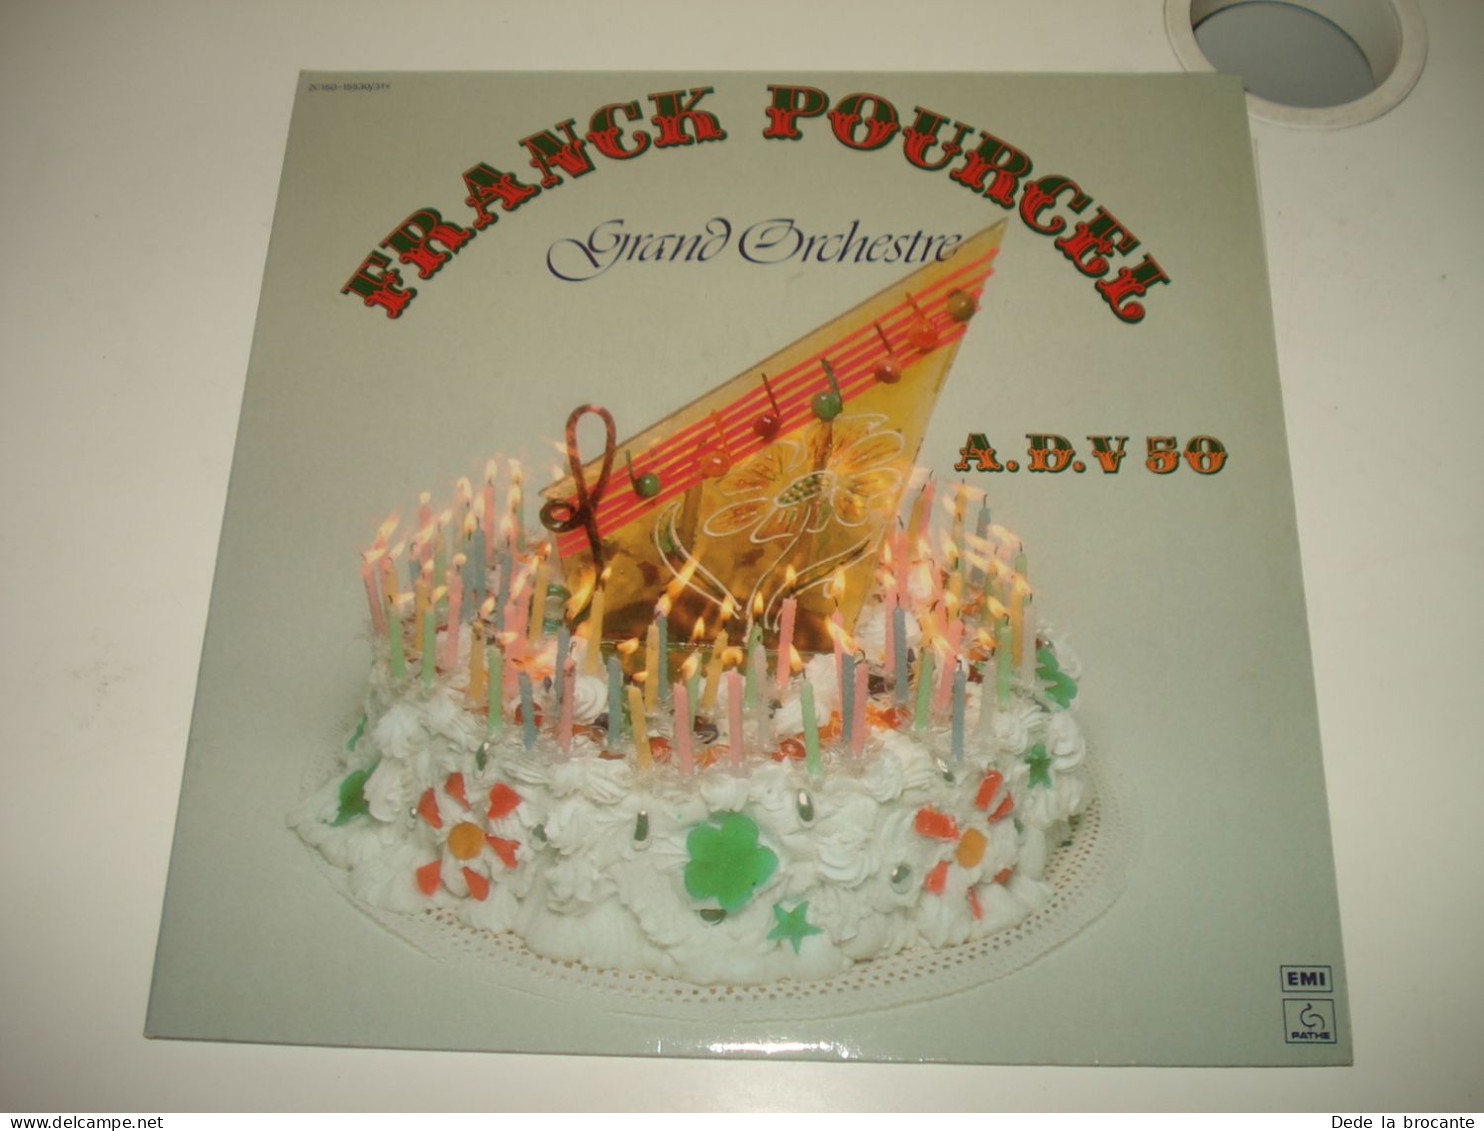 B14 / Franck Pourcel  Grand Orchestre - 2 X LP – 2C 150-15530/31Y - Fr 1977  M/M - Disco, Pop